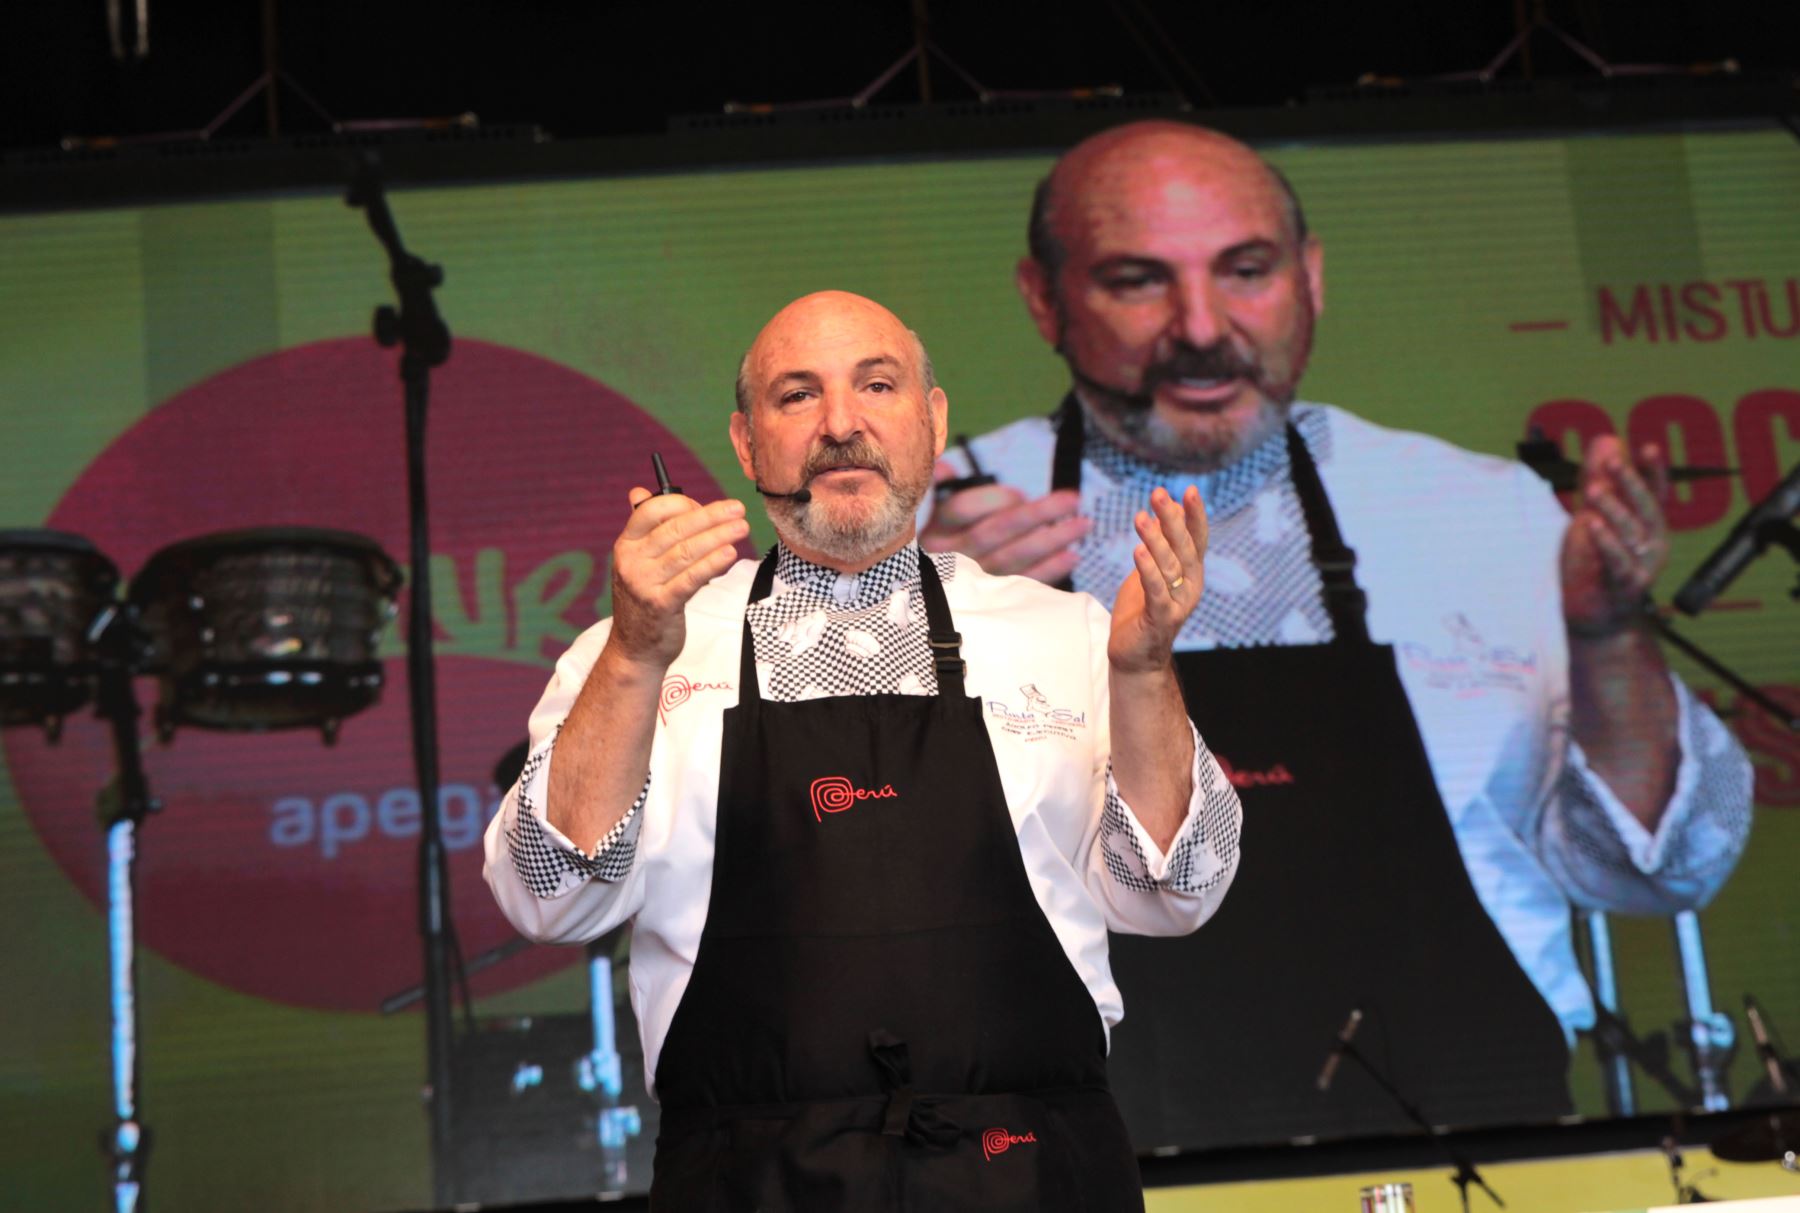 Adolfo Perret explica las porpiedades del Tarwi en la Feria Gastronomica Mistura 2016. Foto: ANDINA/ Dante Zegarra